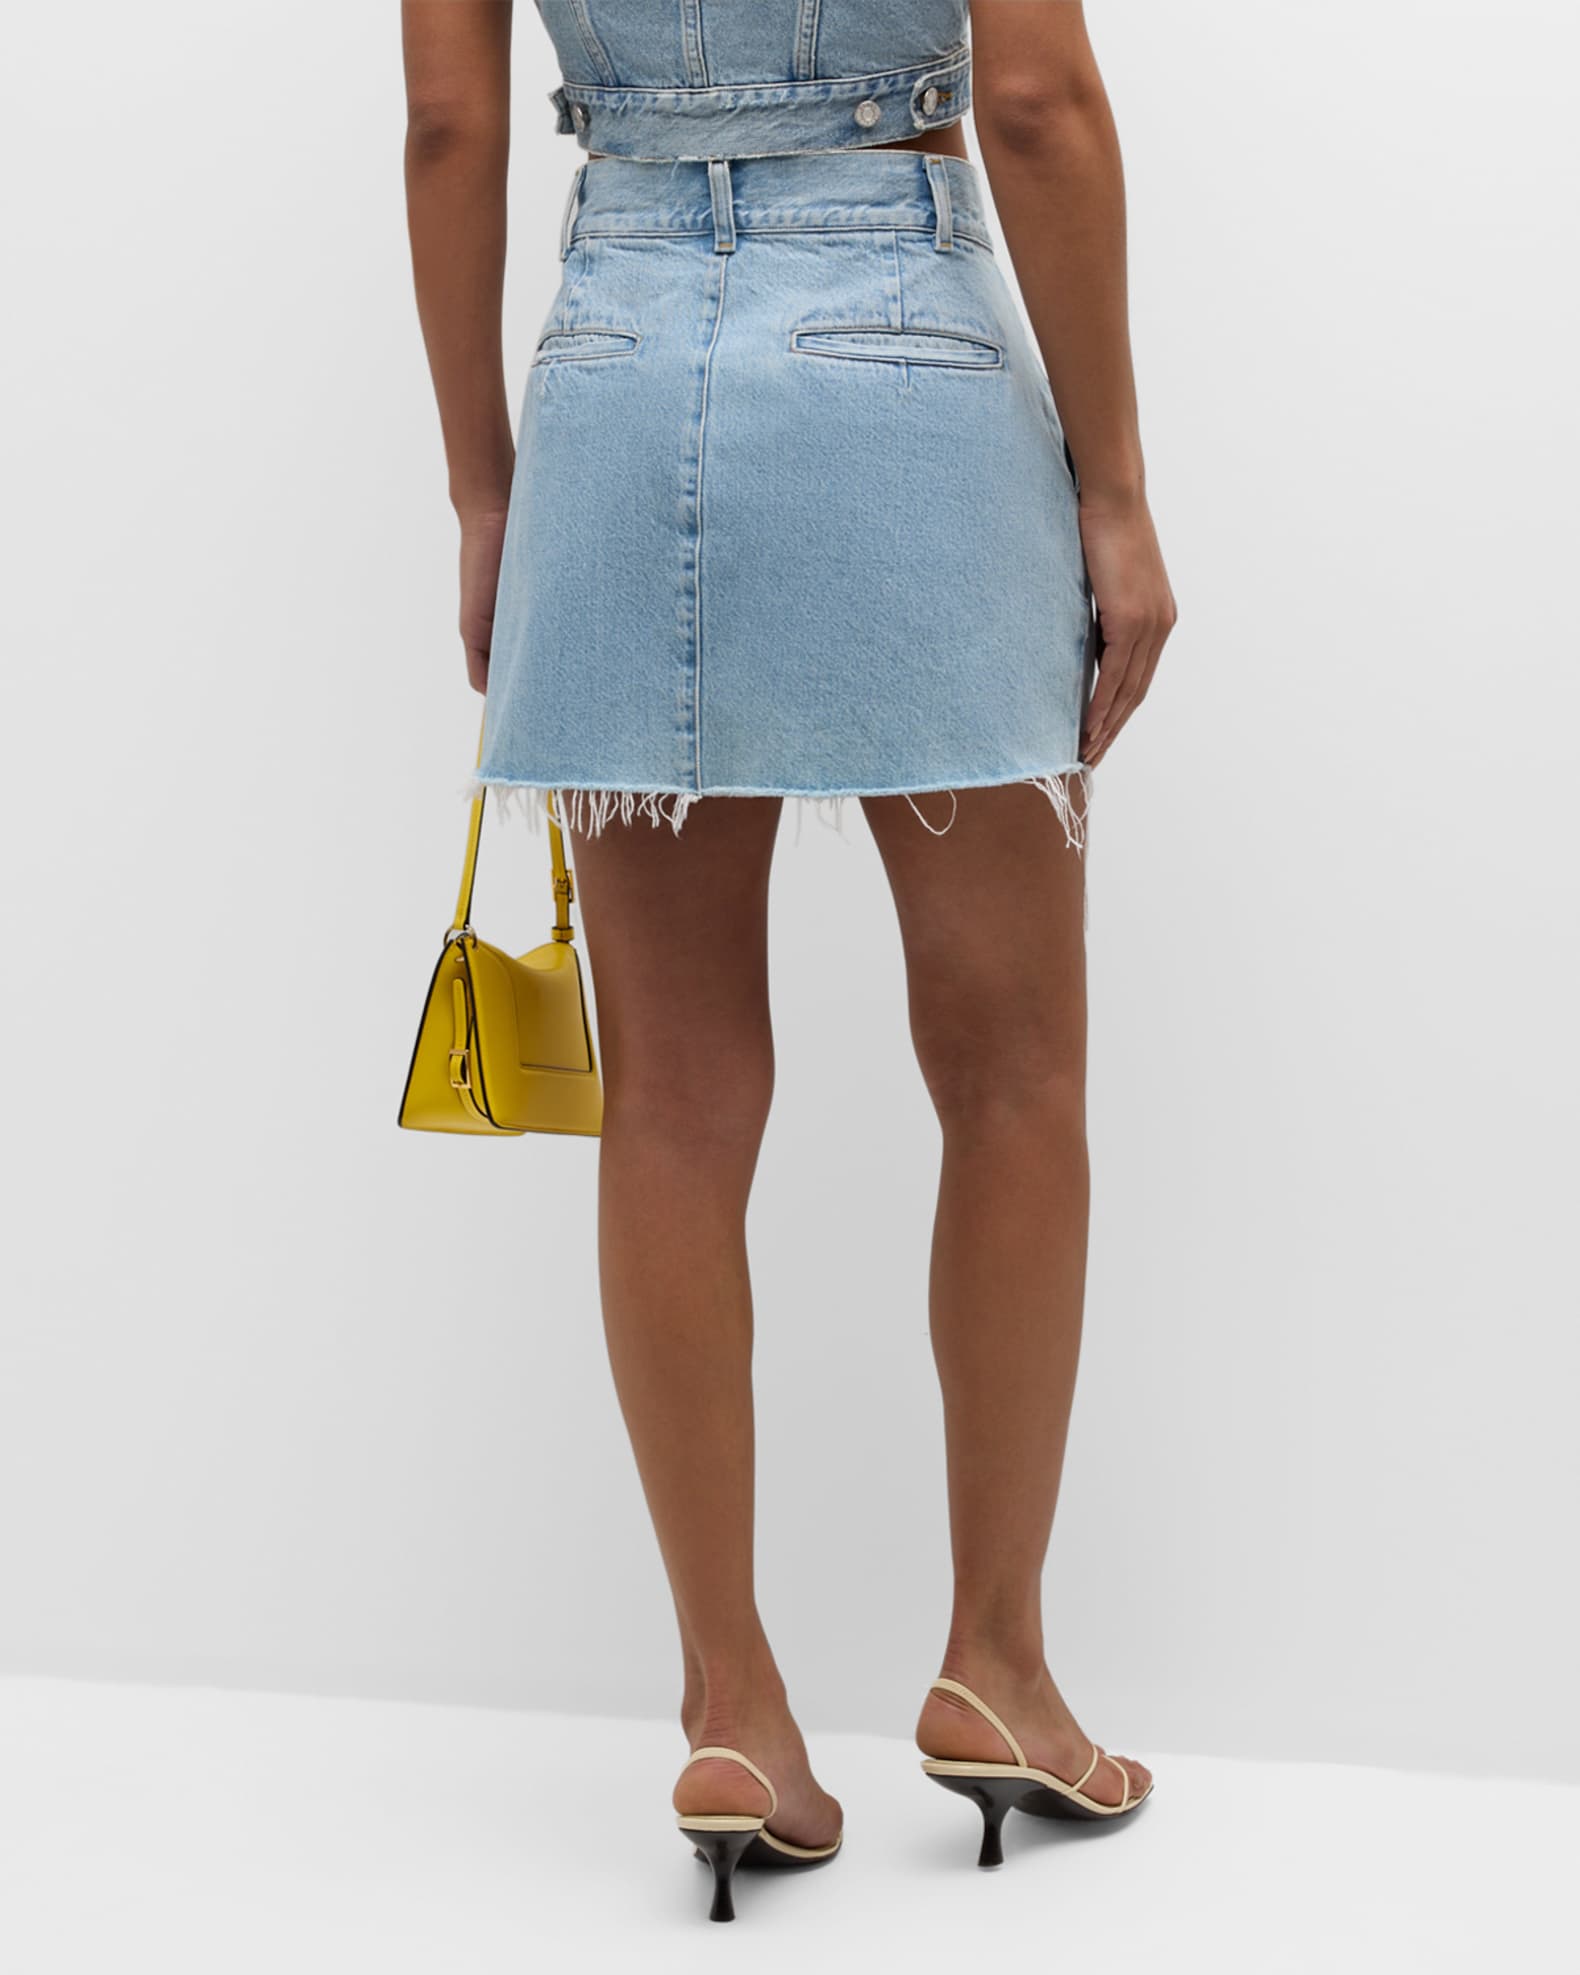 Becker A-Line Denim Mini Skirt